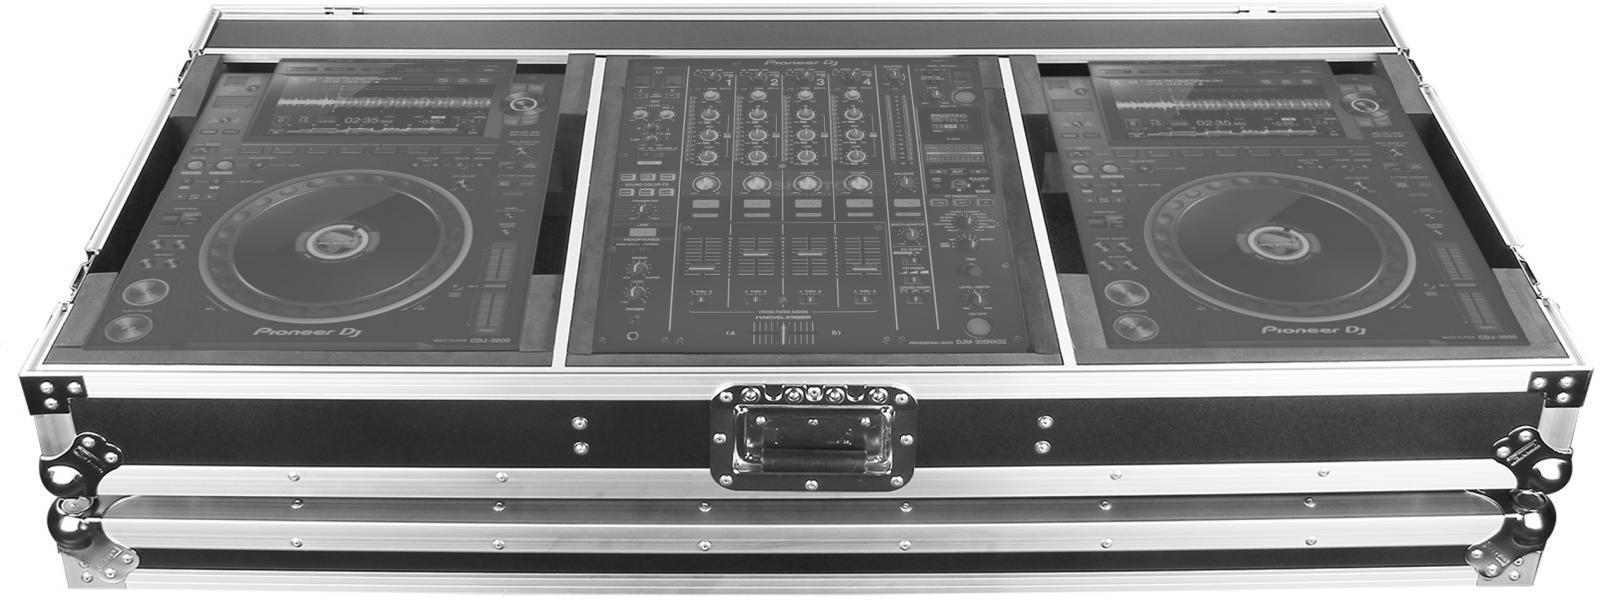 Flightcase dj Power acoustics PCDM 3000